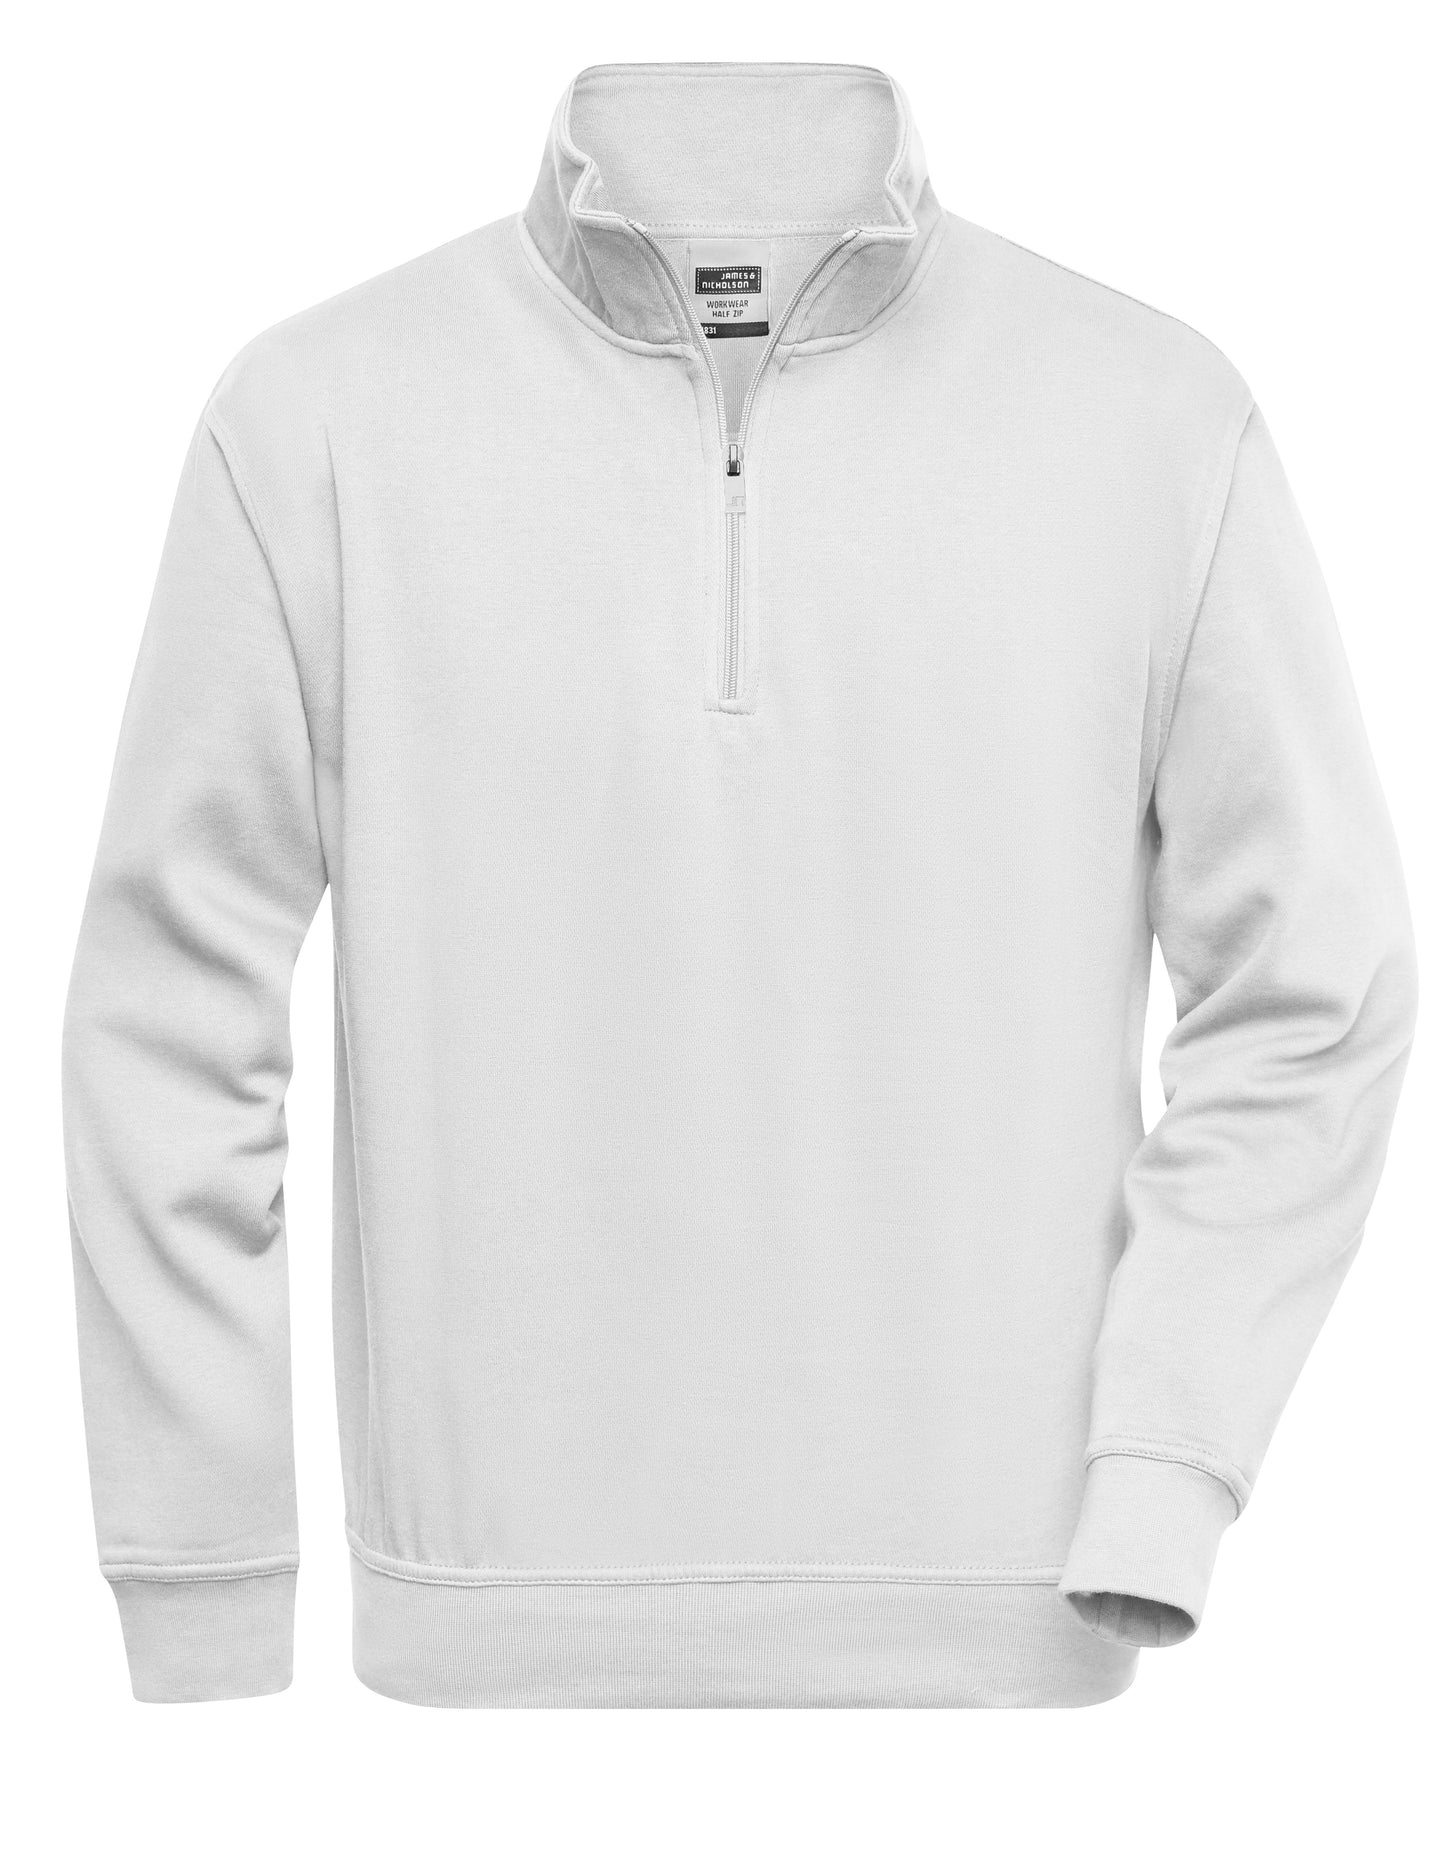 Personalisierbares Unisex Half Zip Sweatshirt - Weiss und Grau